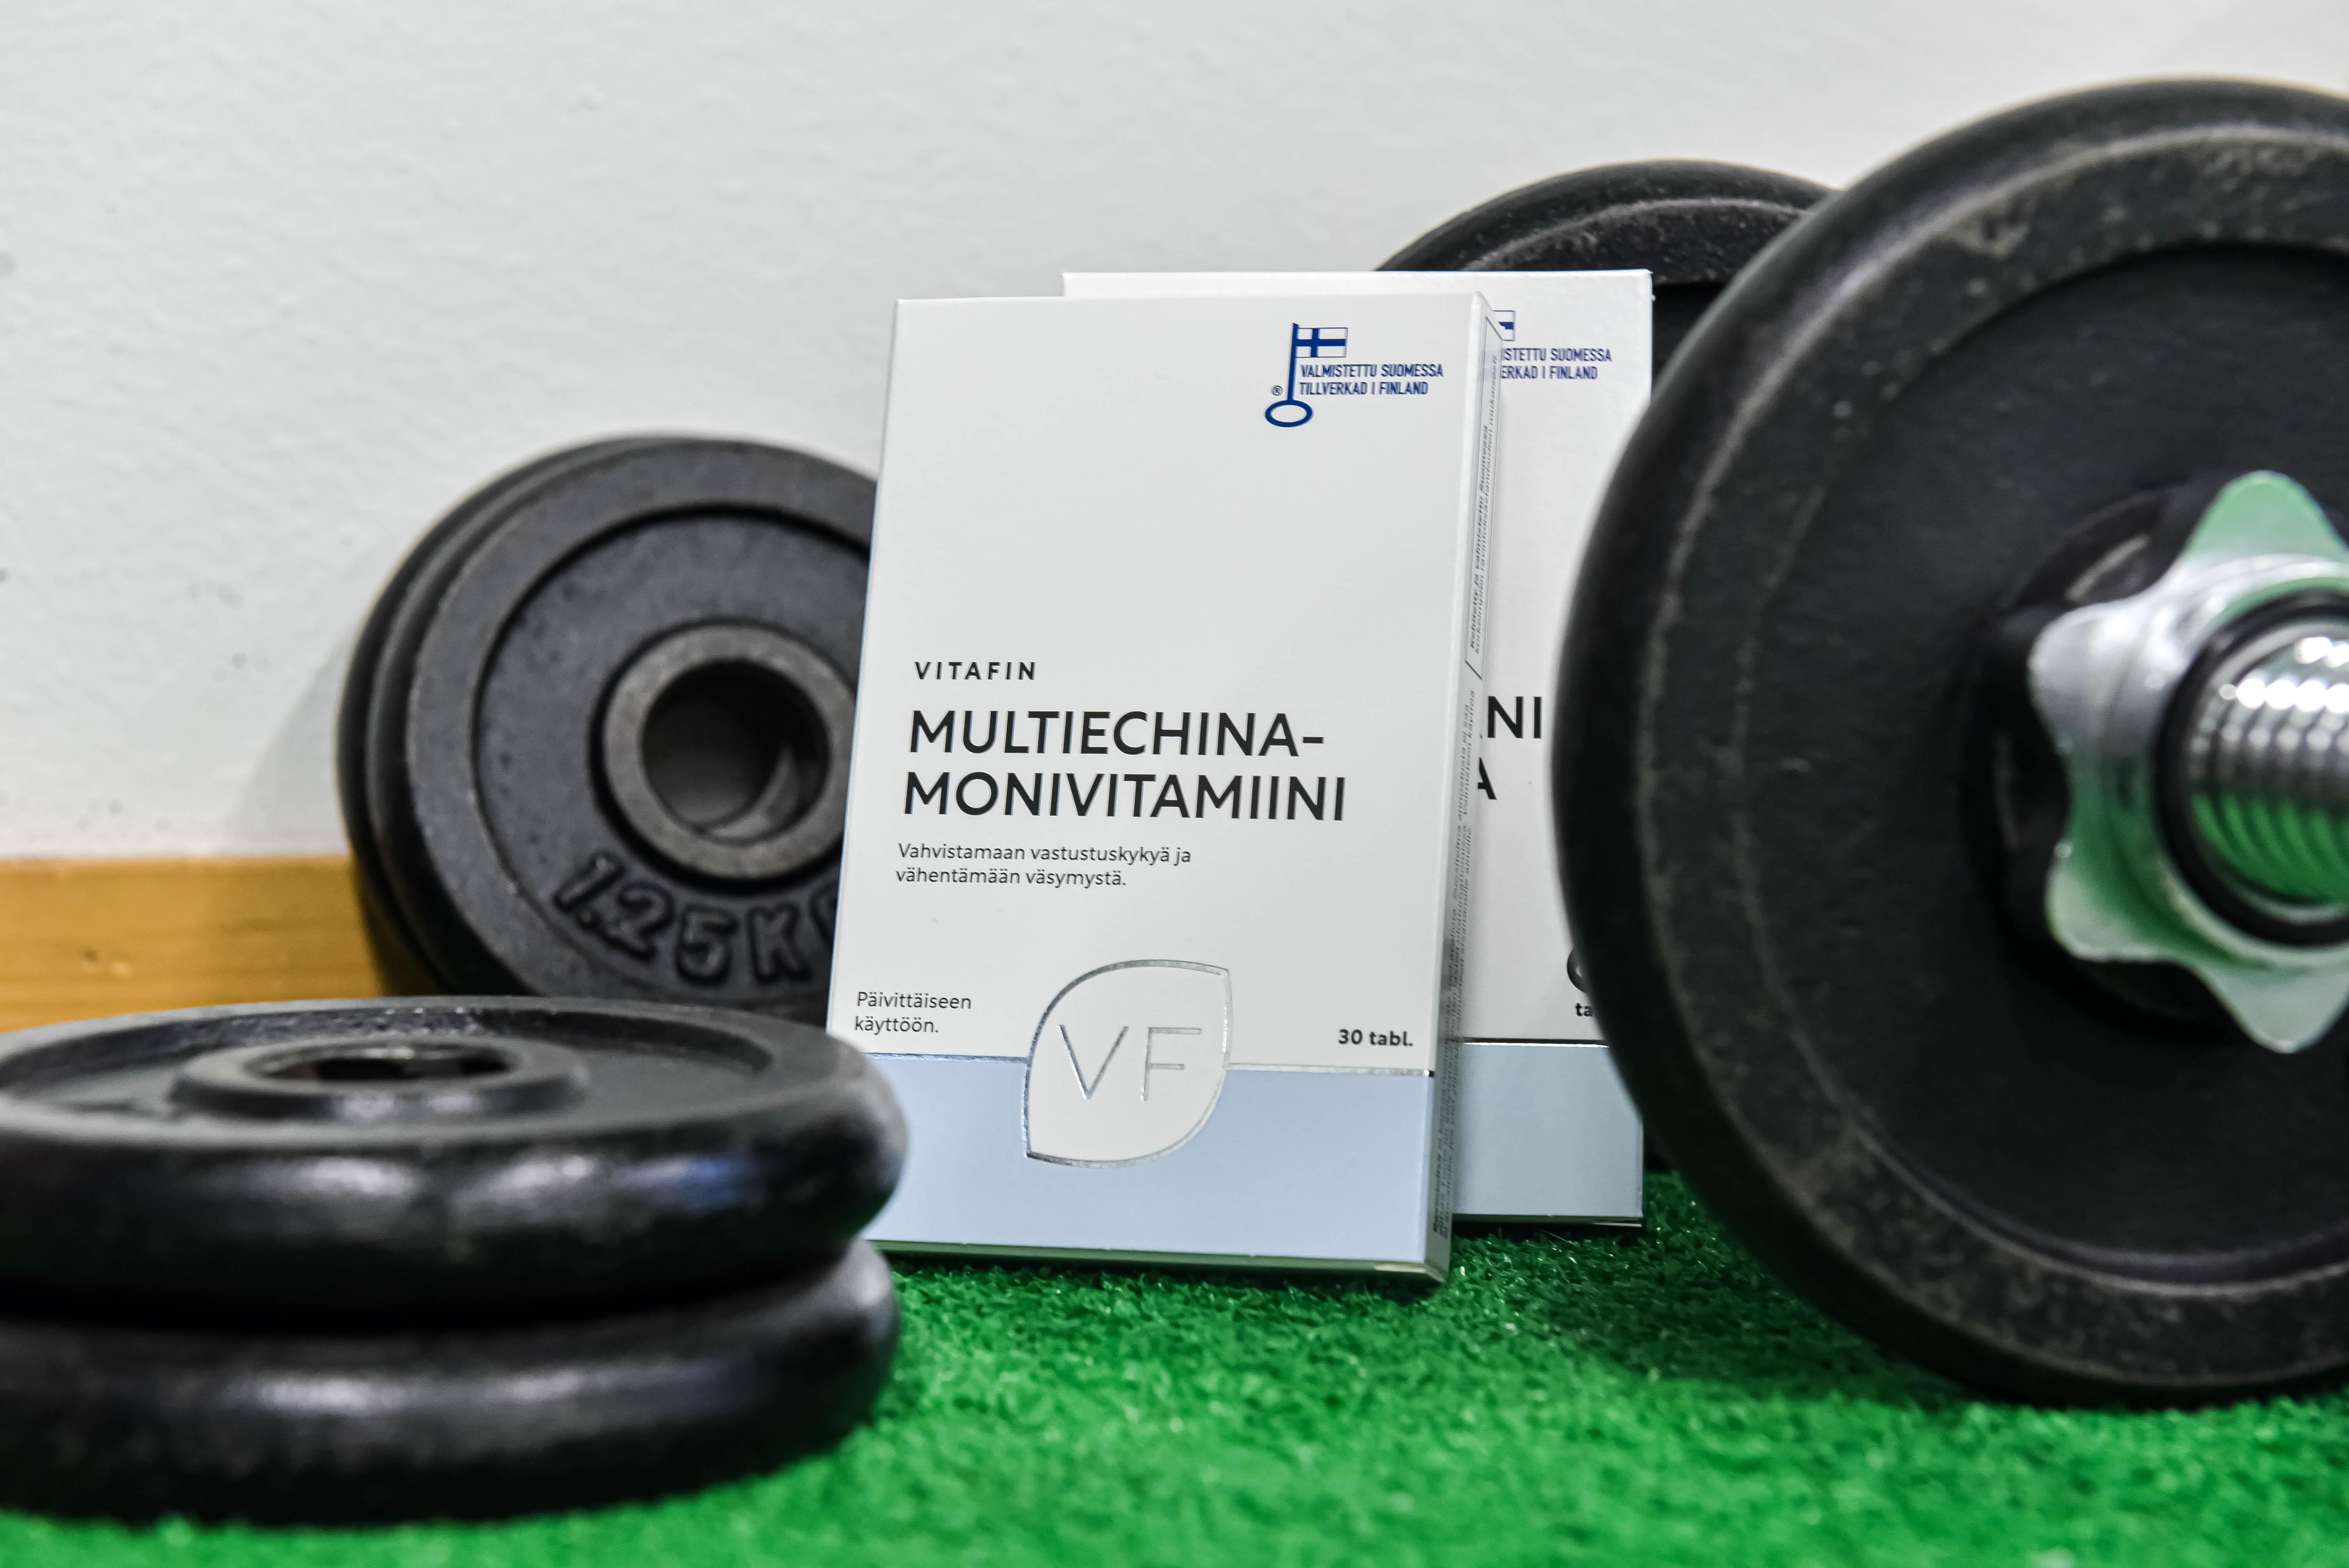 Multiechina-Monivitamiini 3kk - VitaFin Oy